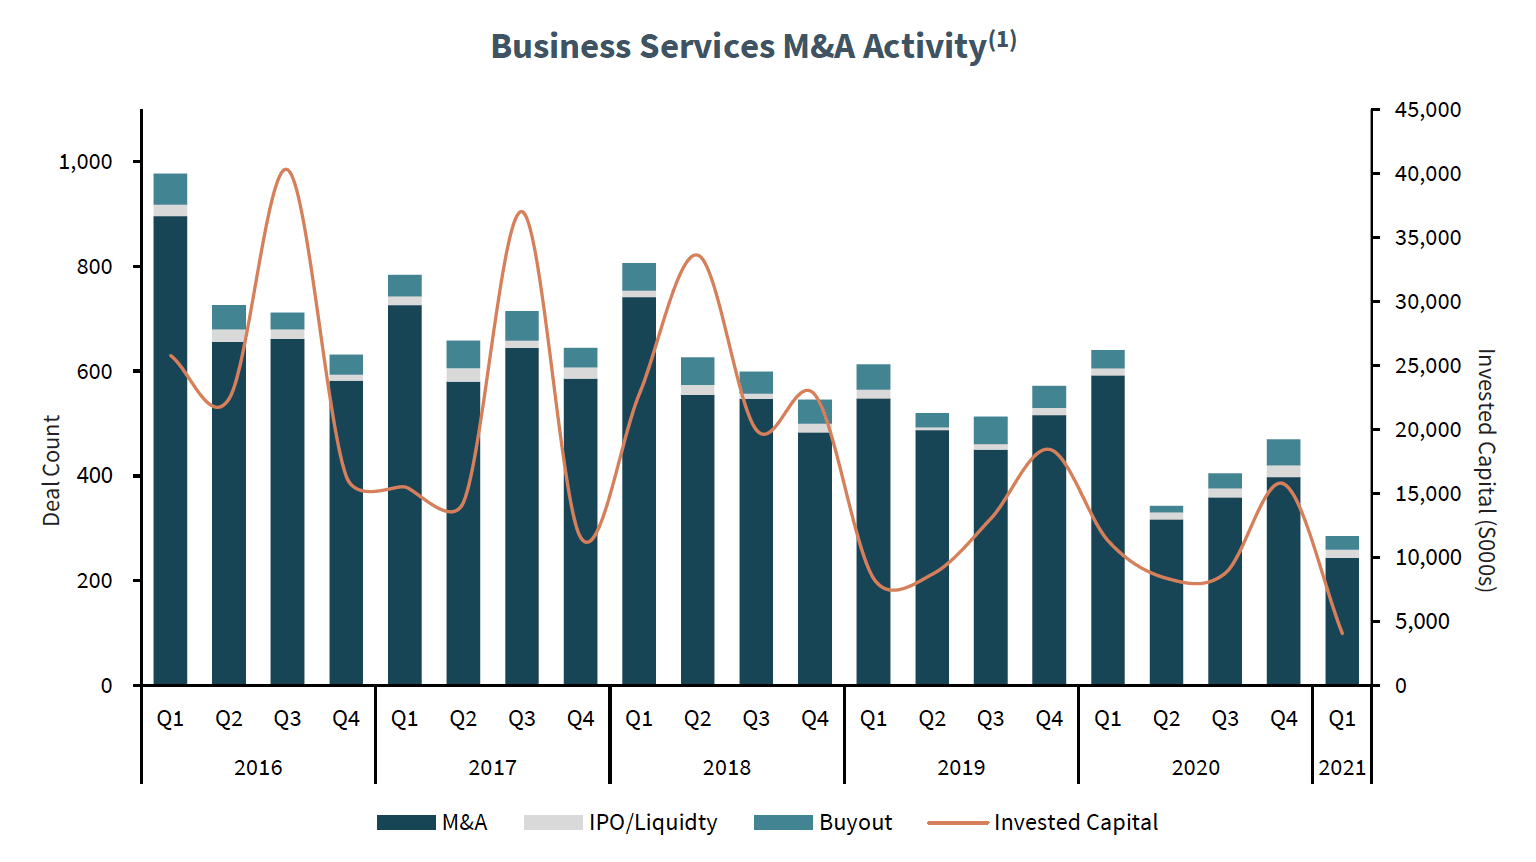 Business Services M&A Activity(1)